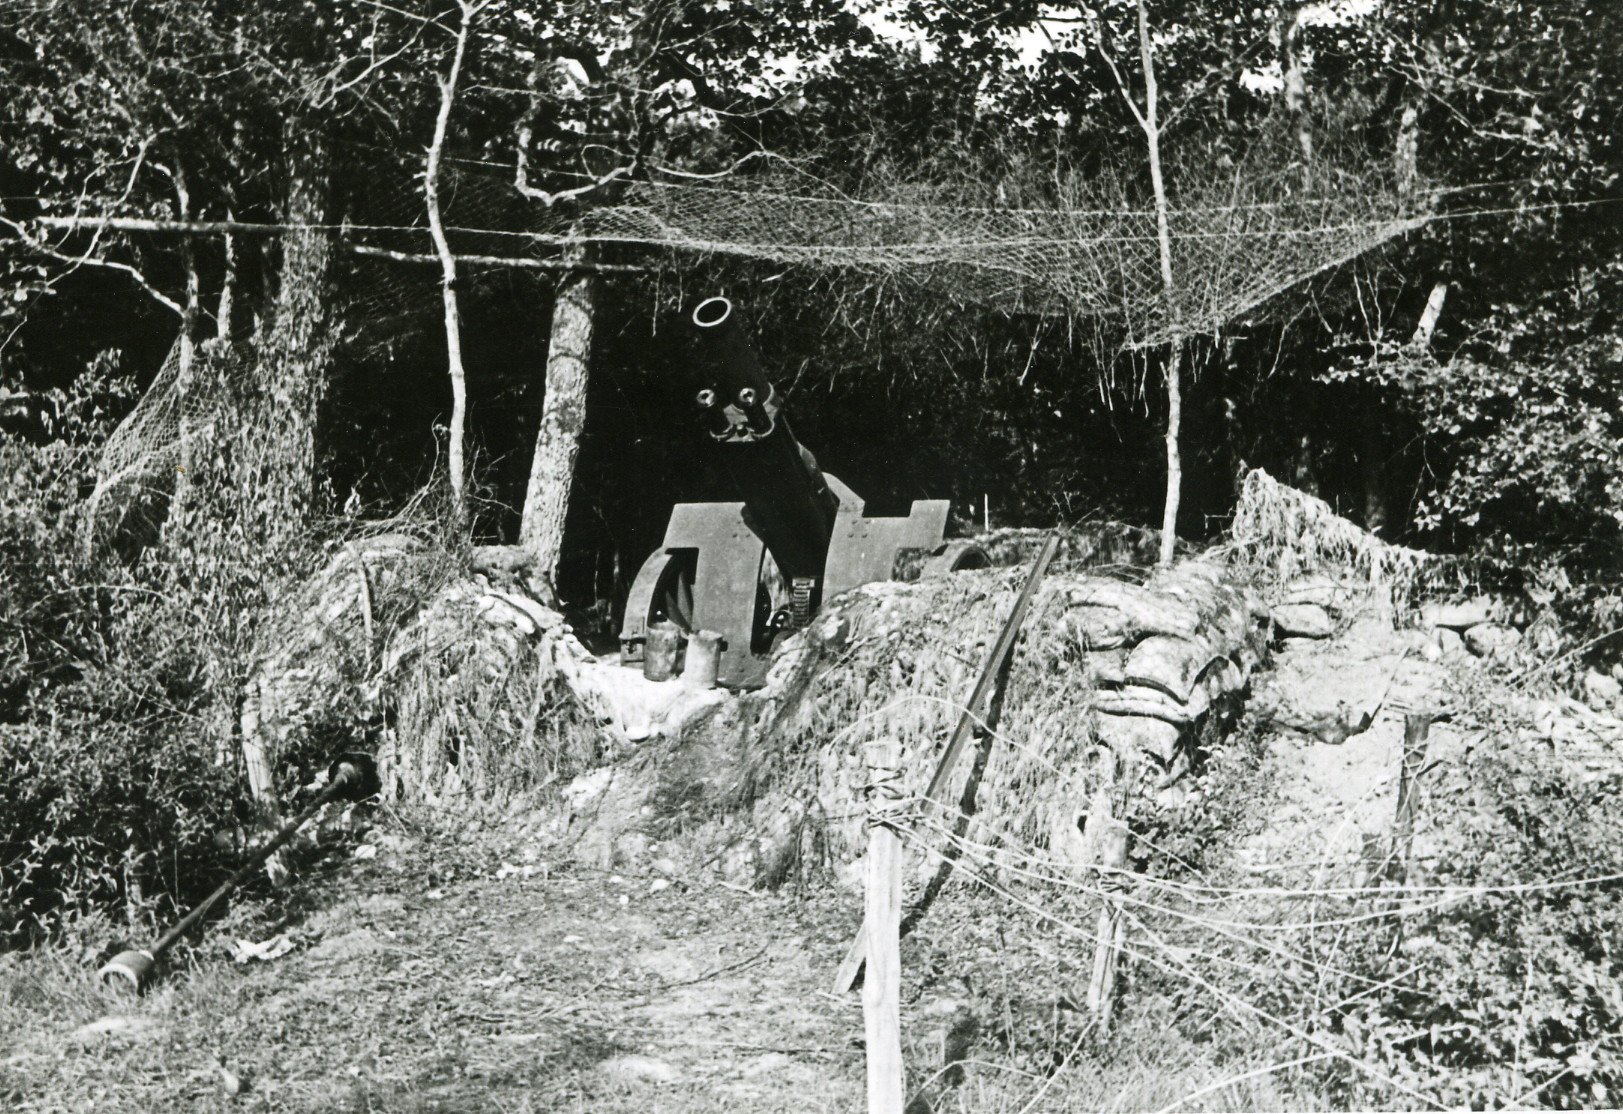 Pièce de 155C Saint-Chamond mle 1915